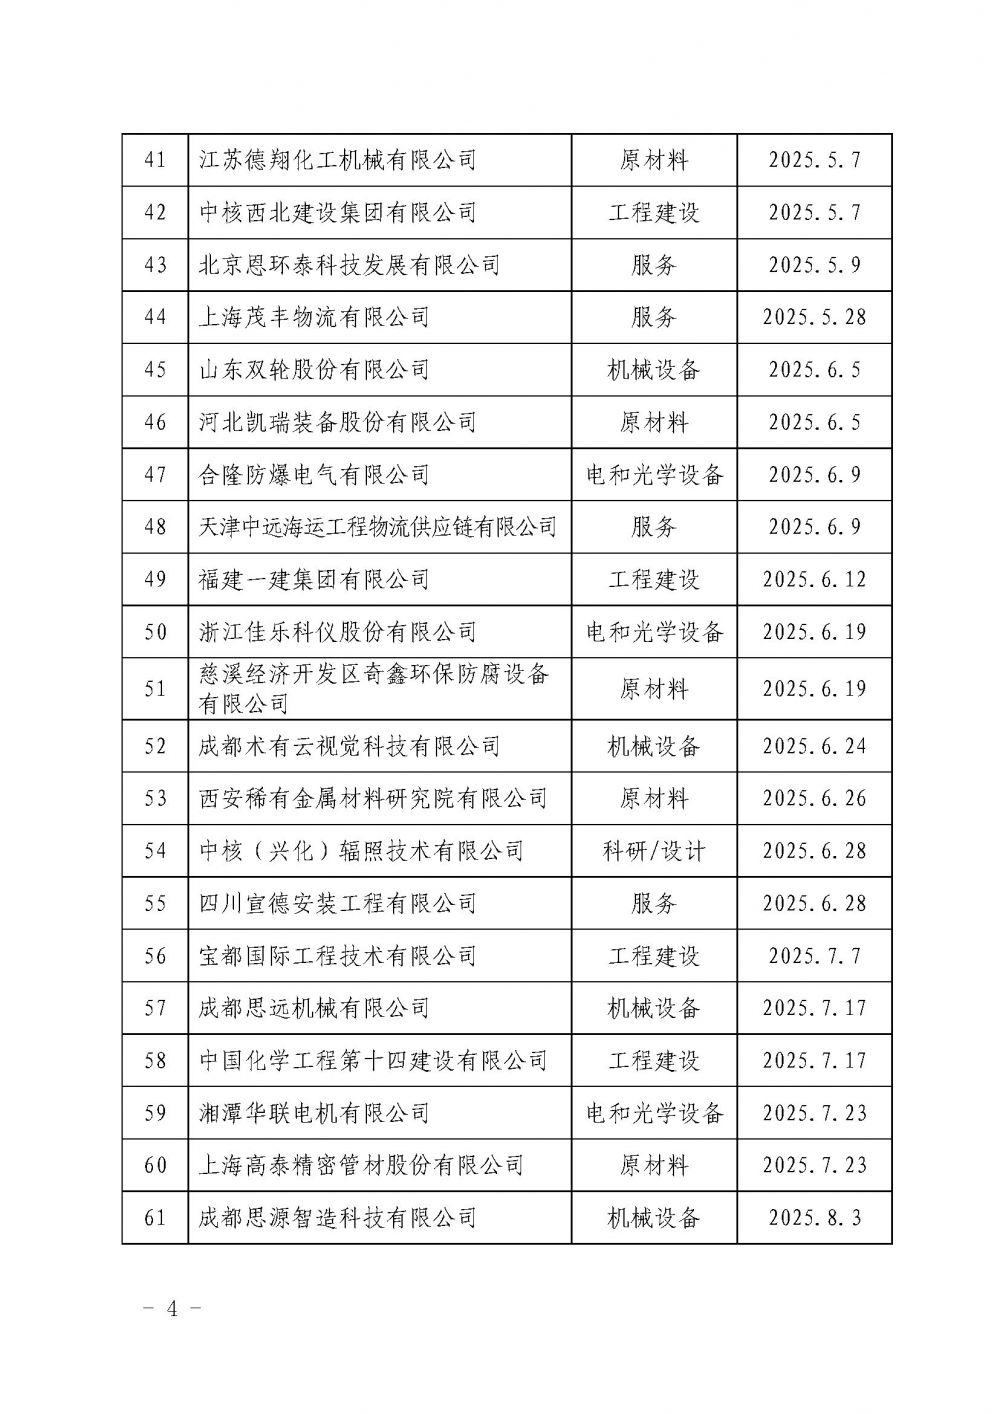 中国核能行业协会关于发布第十九批核能行业合格供应商名录的公告_页面_4.jpg